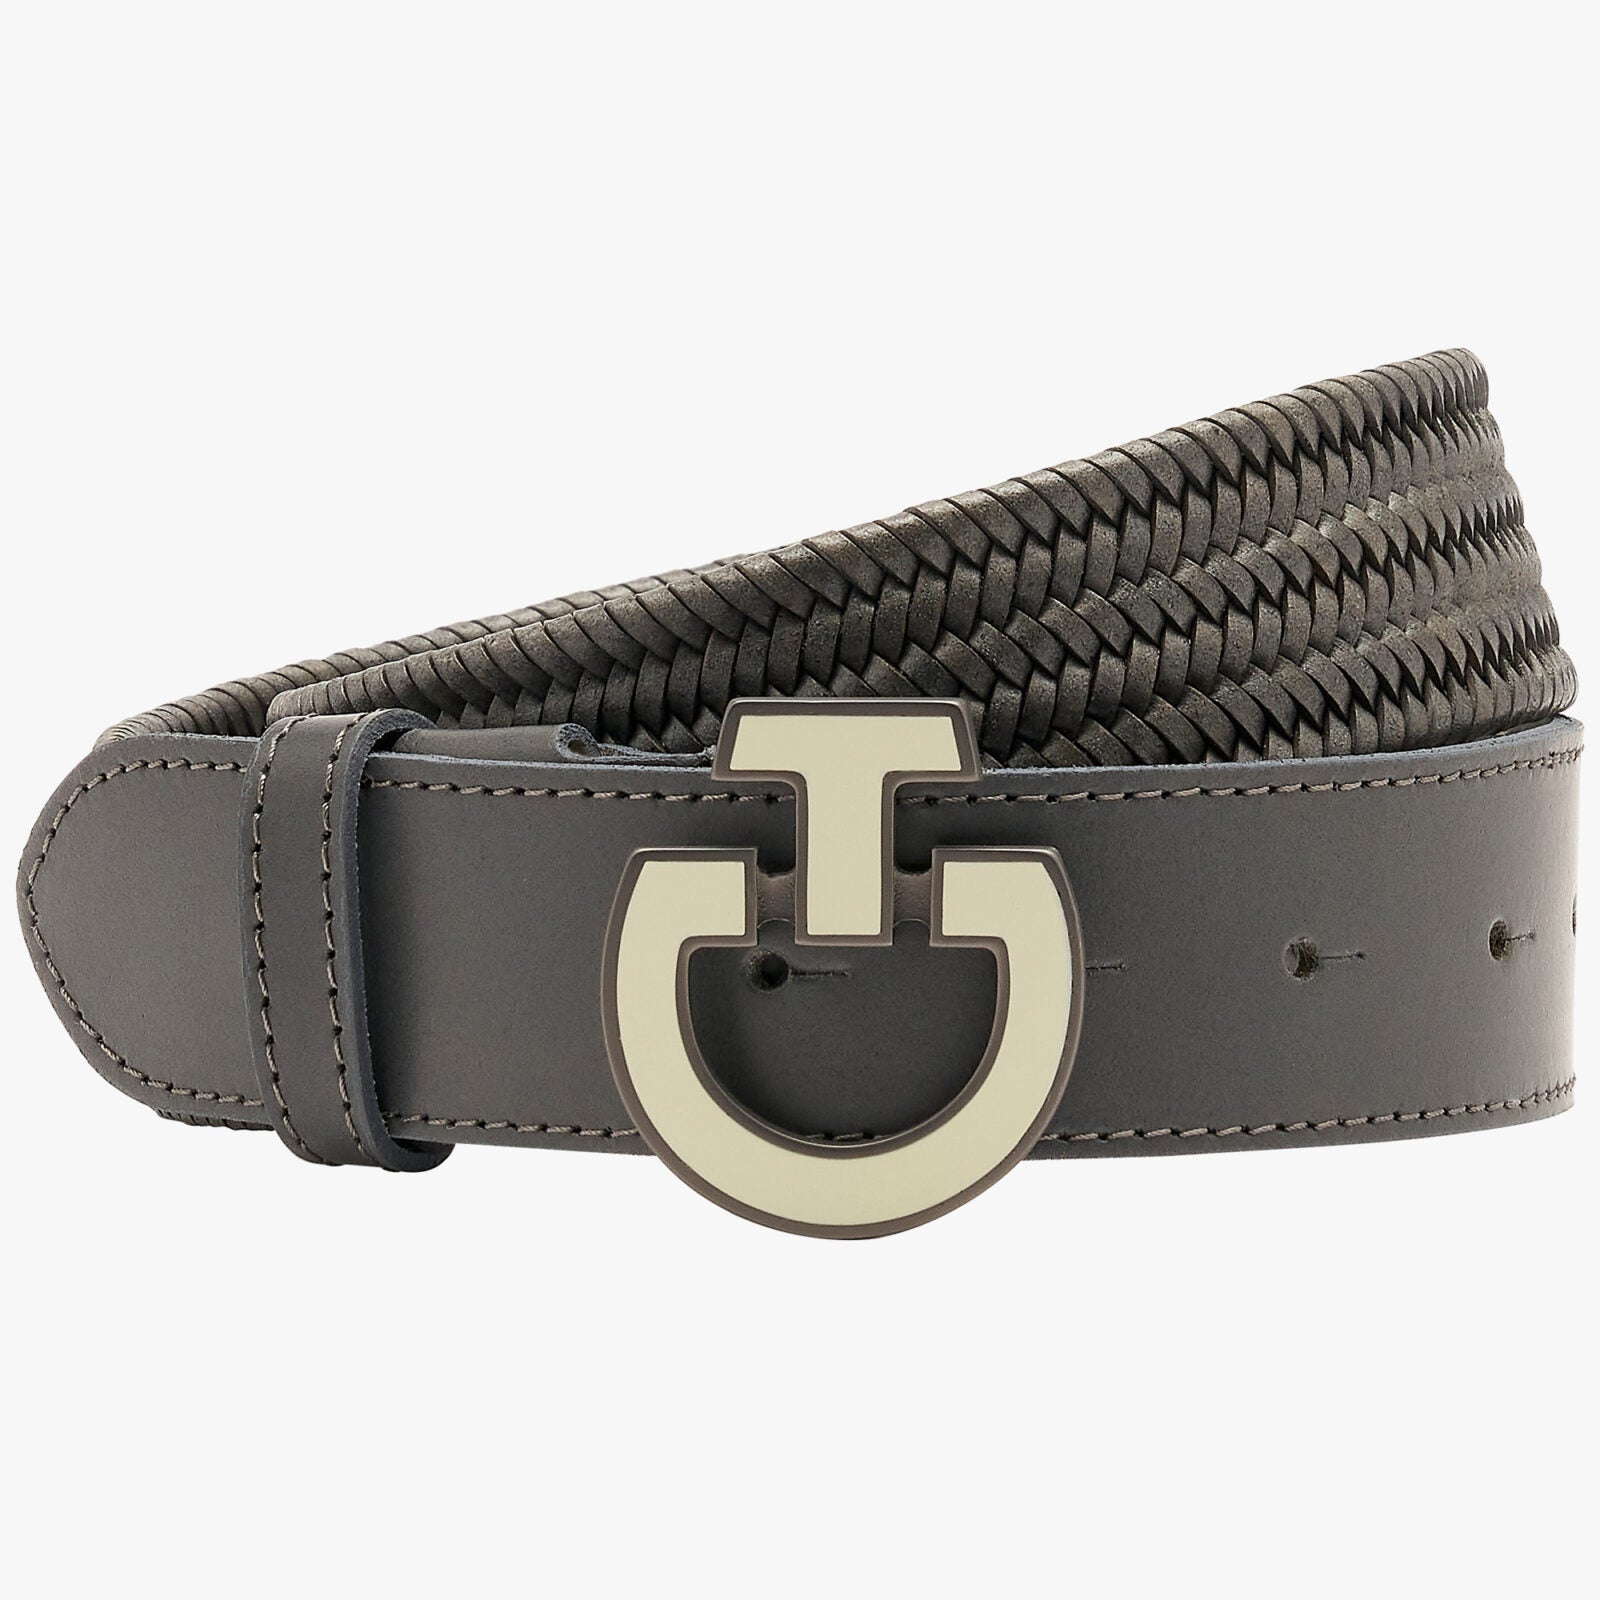 Cavalleria Toscana Leather Elastic Belt